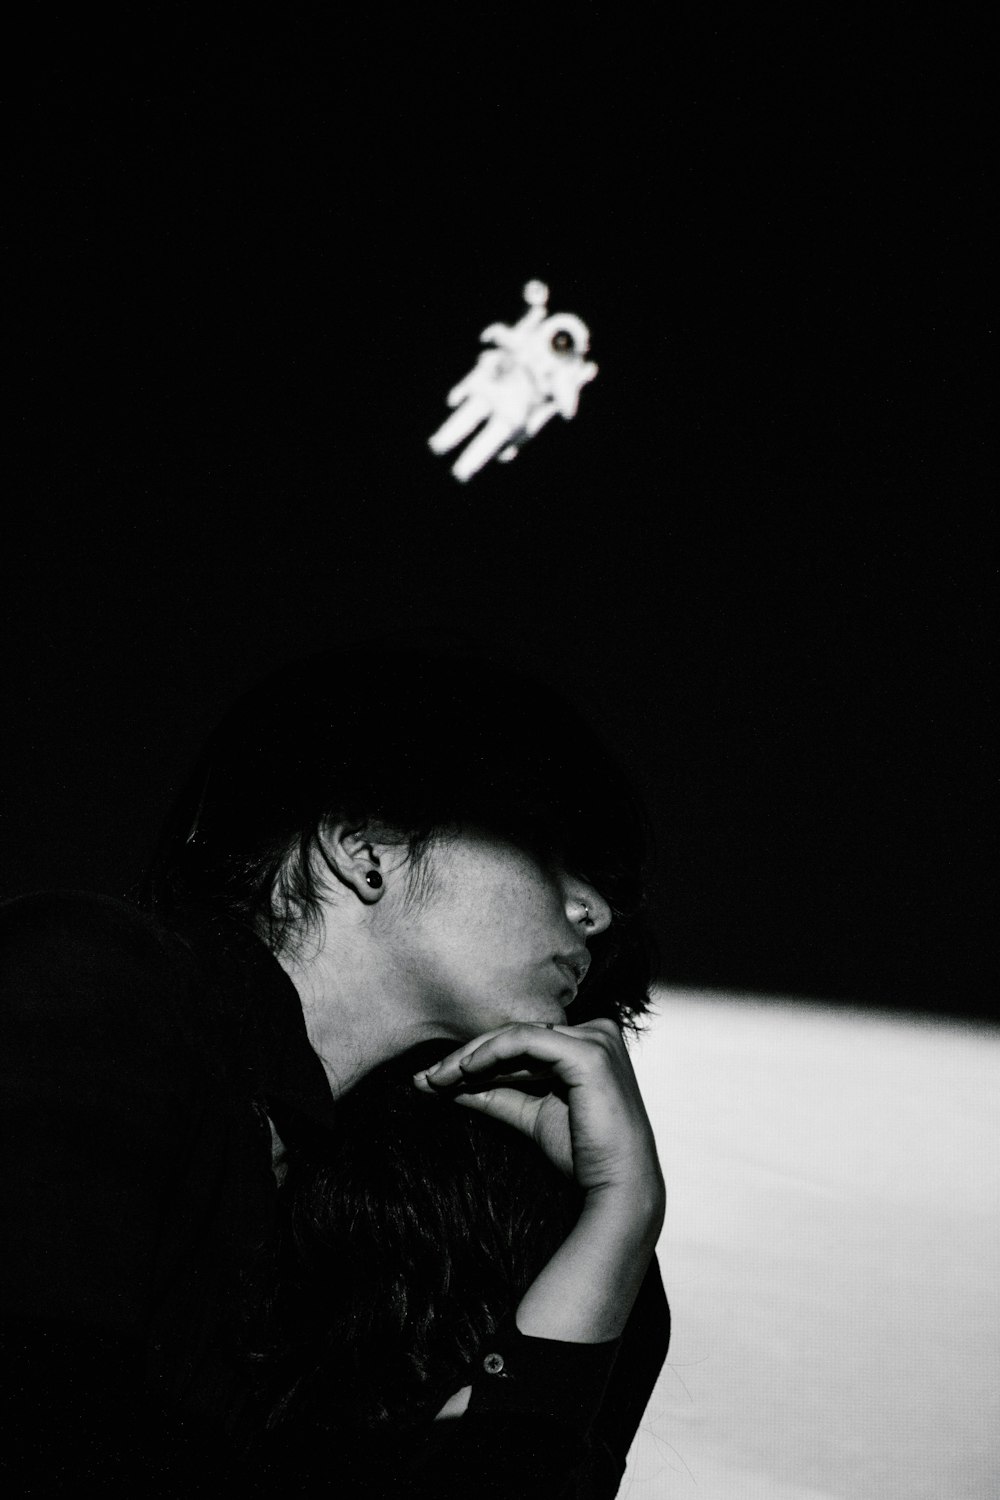 어둠 속에 앉아 있는 사람의 흑백 사진